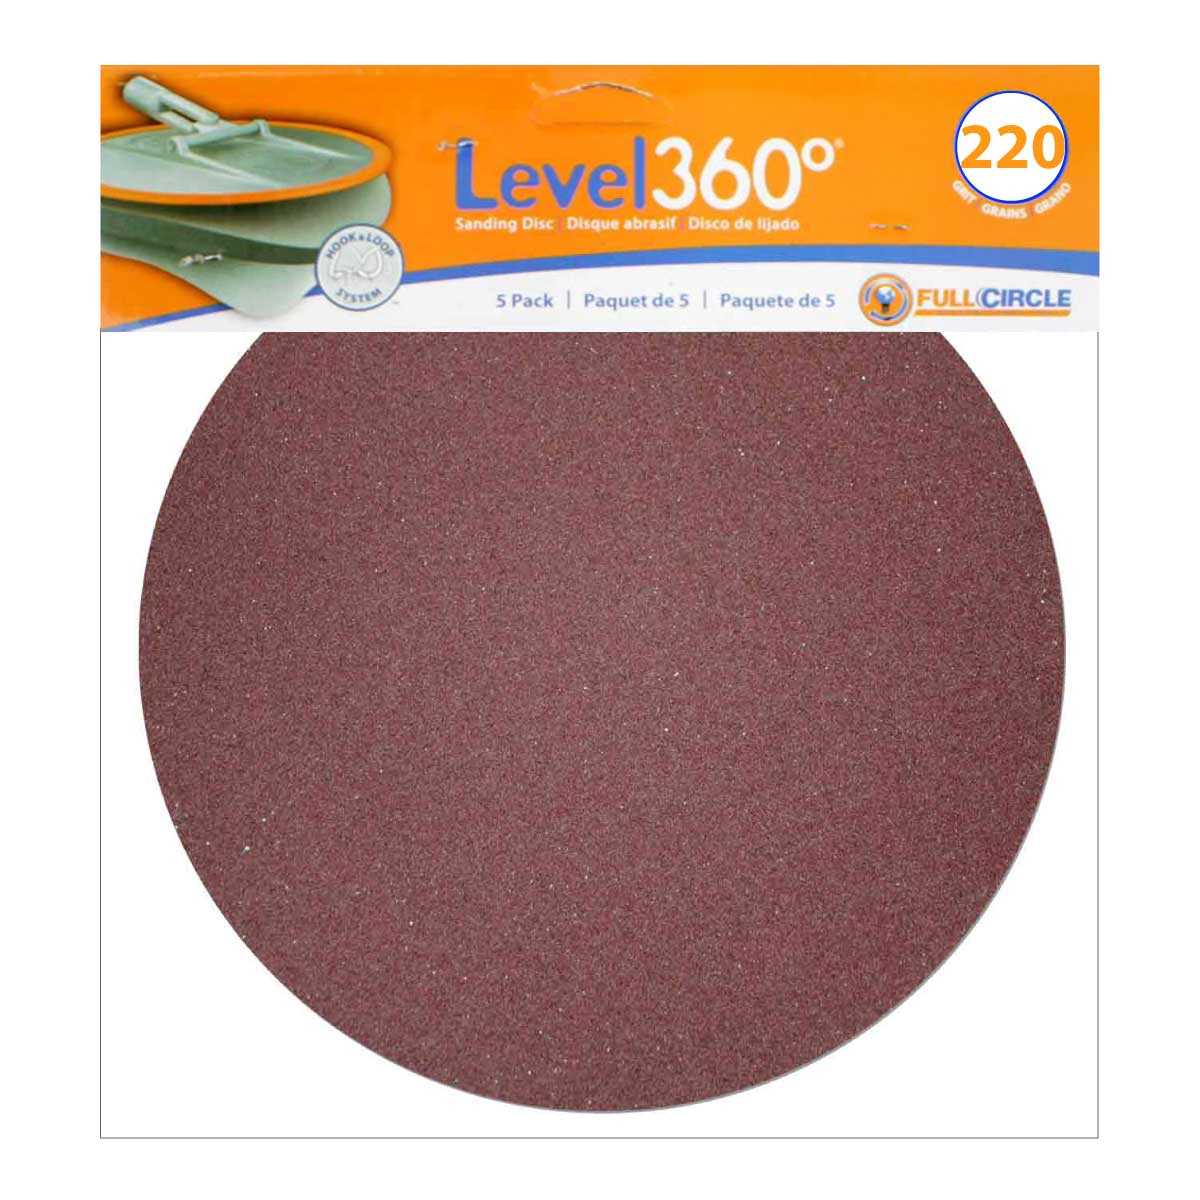 Level 360 Sanding Discs 9